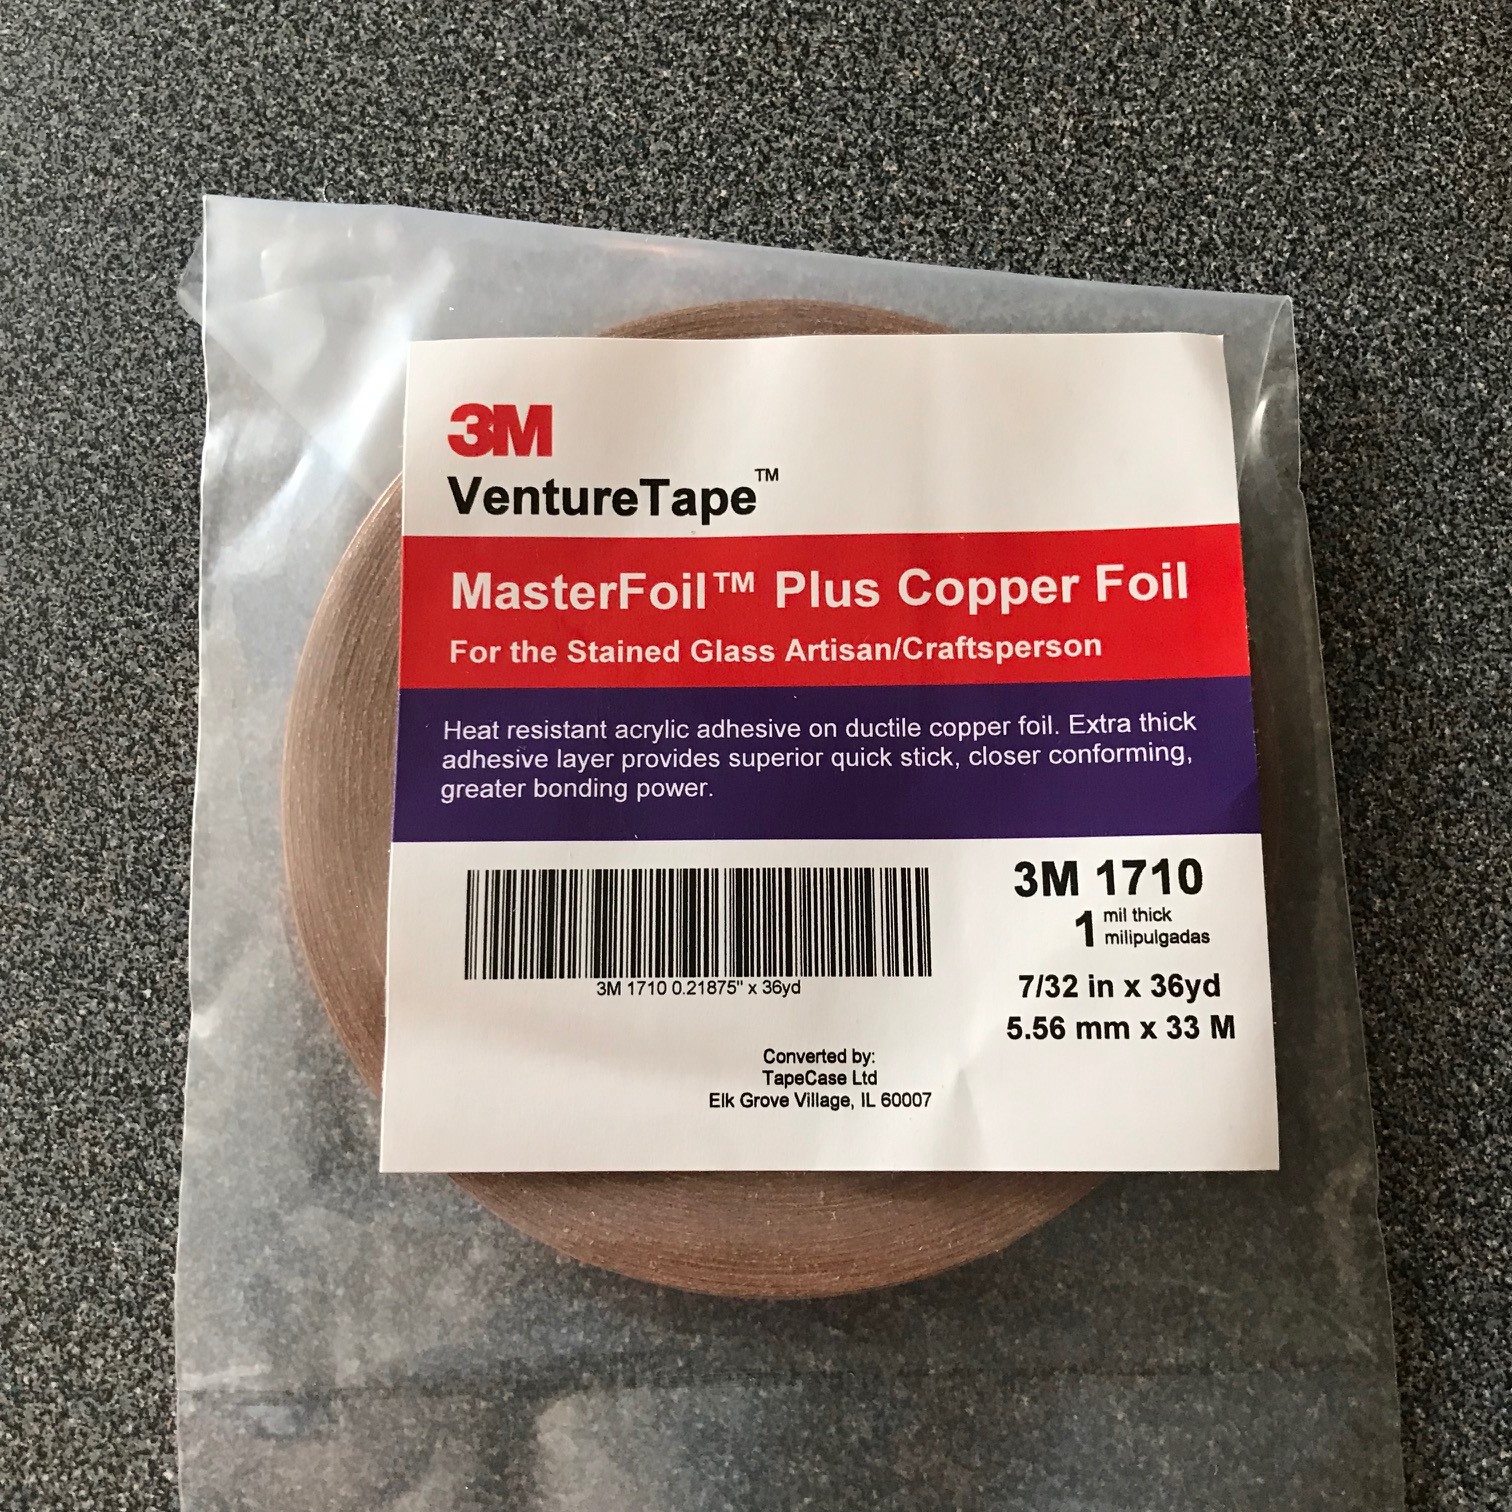 value pack 7/32 inch Venture Black Backed Copper Foil 3 Rolls 